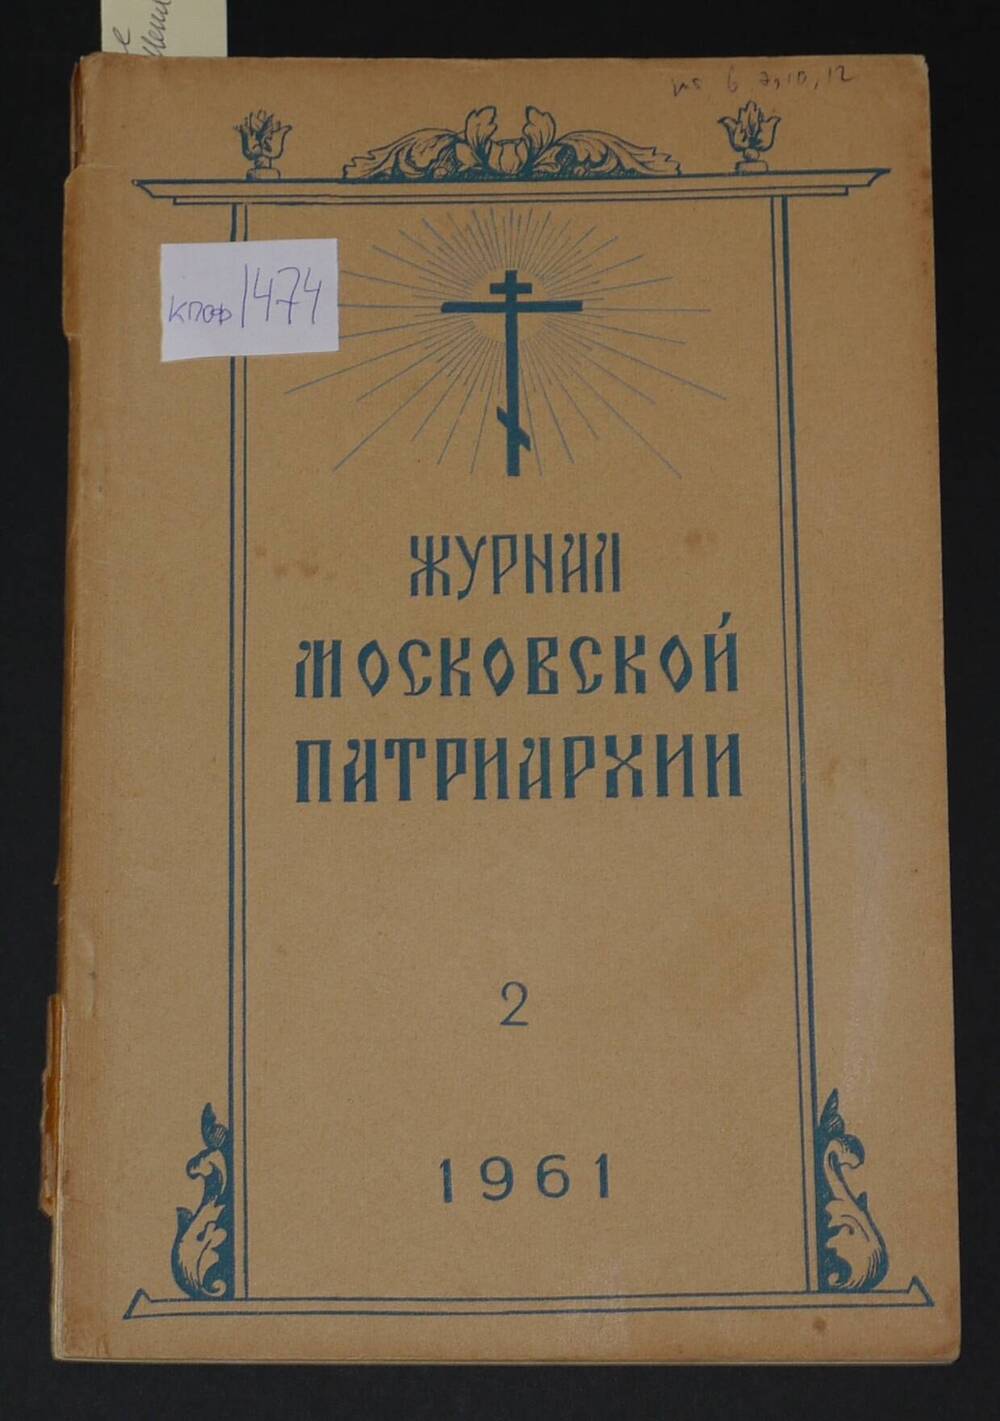 Журнал Московской Патриархии №2, 1961г.